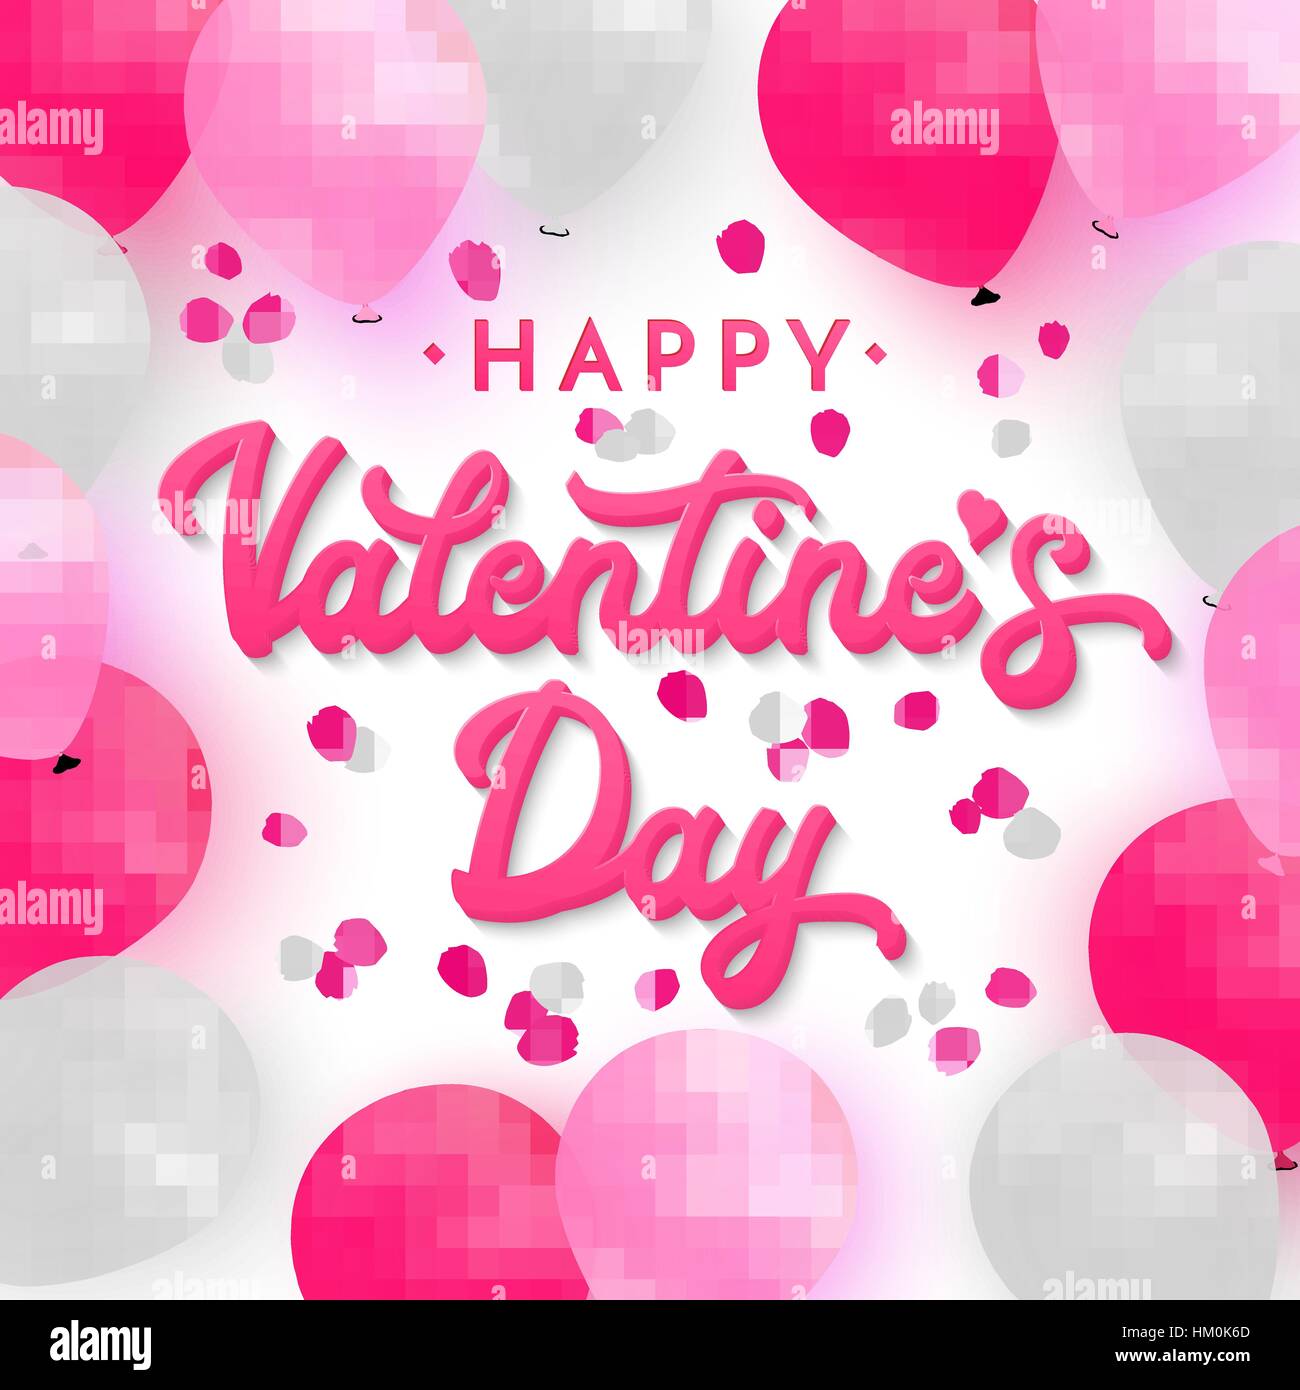 Valentines Day card con 3d rosa scritte a mano il testo su sfondo romantico con bianco, rosa e deep pink palloncini realistici su sfondo con petali di rosa. Font illustrazione vettoriale. Illustrazione Vettoriale